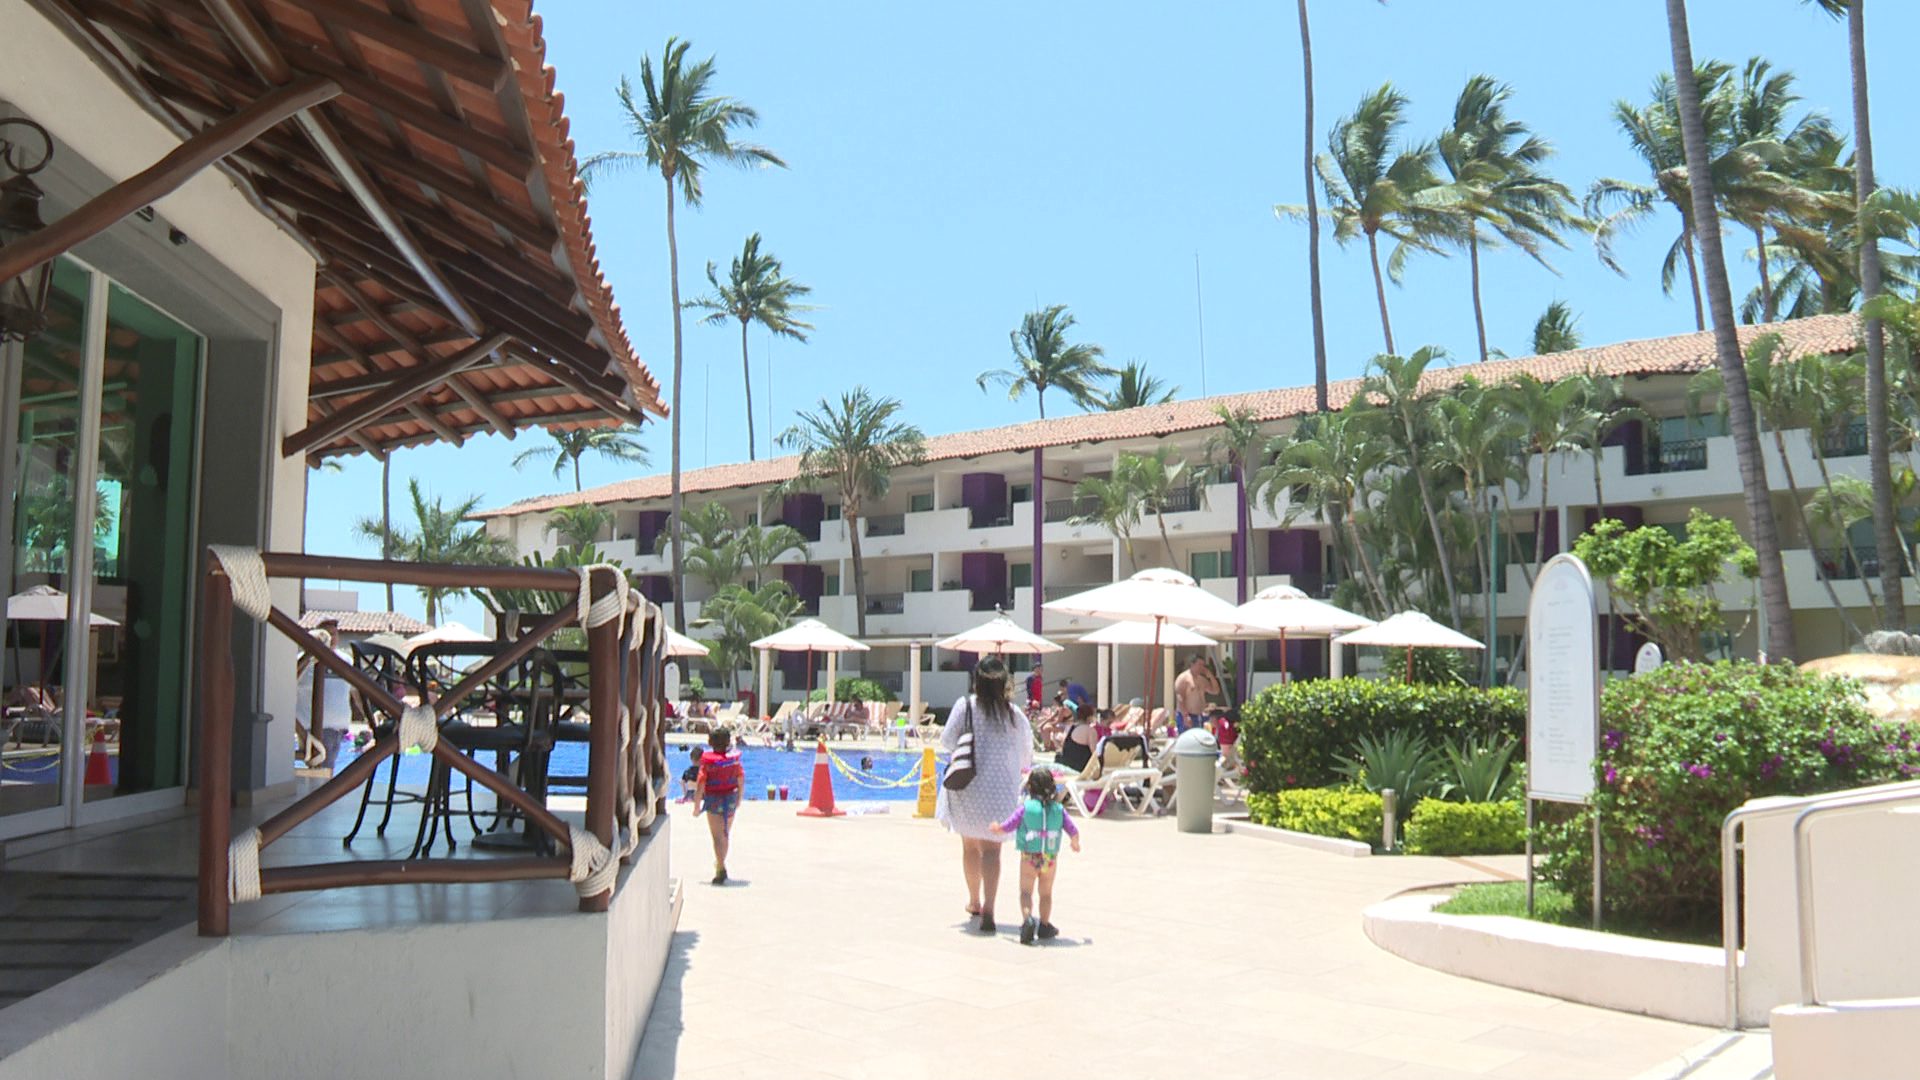 Turistas caminando en hotel frente a playa